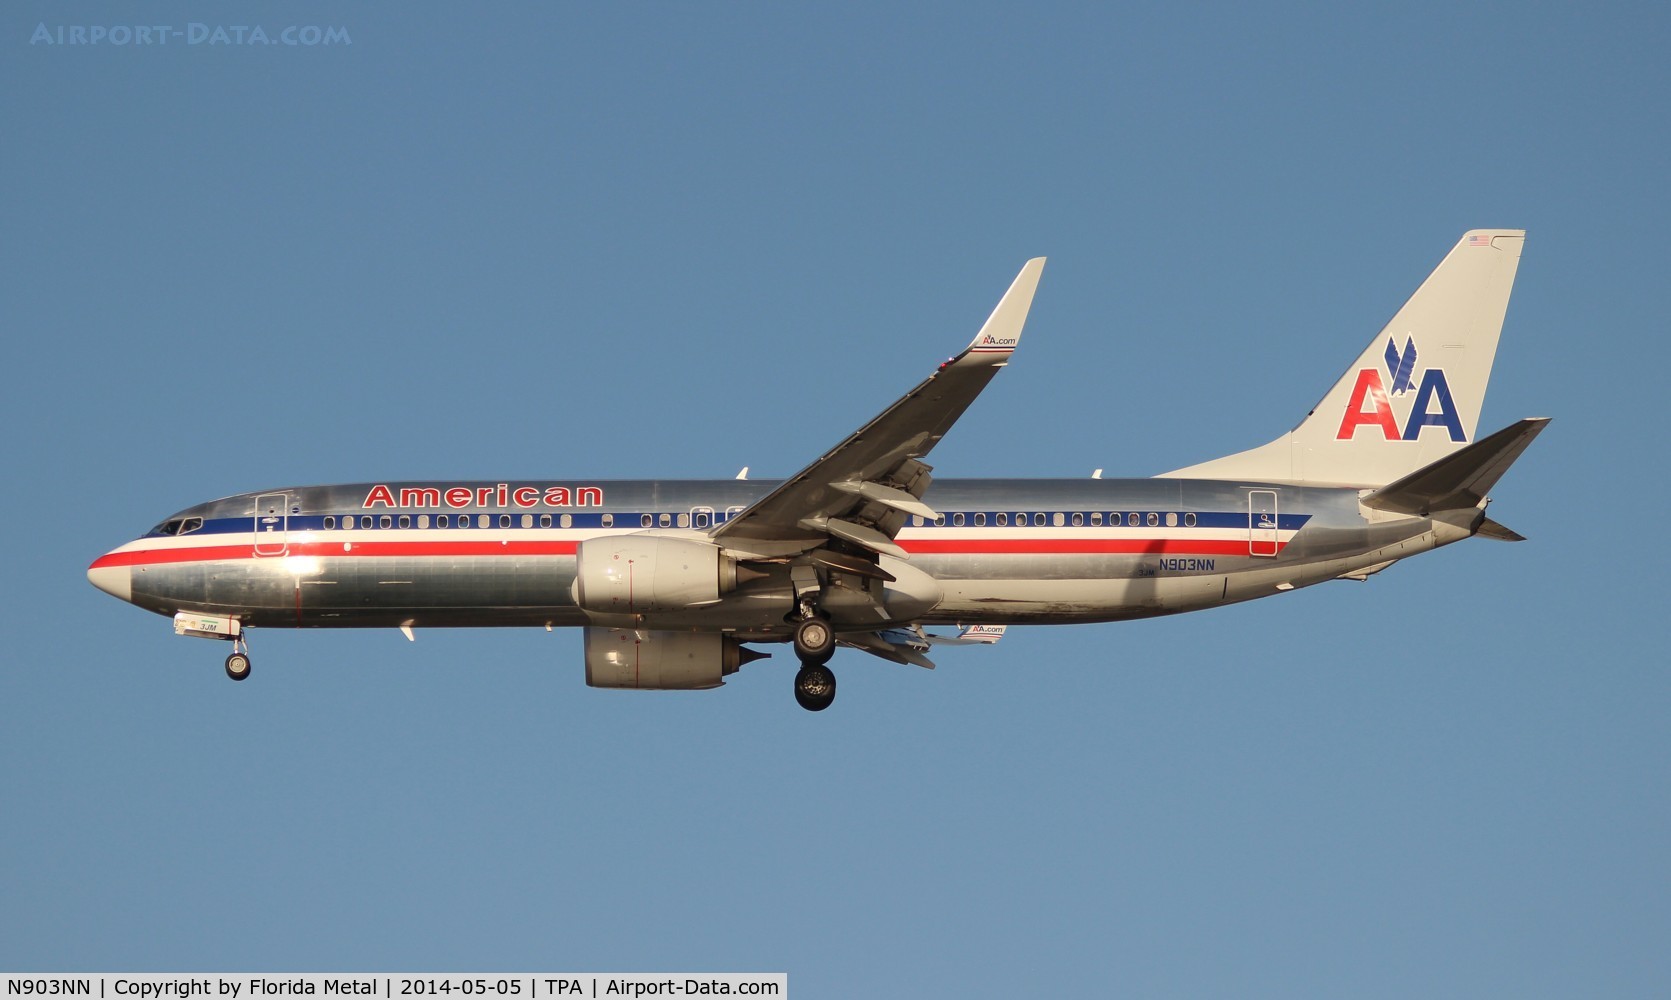 N903NN, 2012 Boeing 737-823 C/N 31153, American